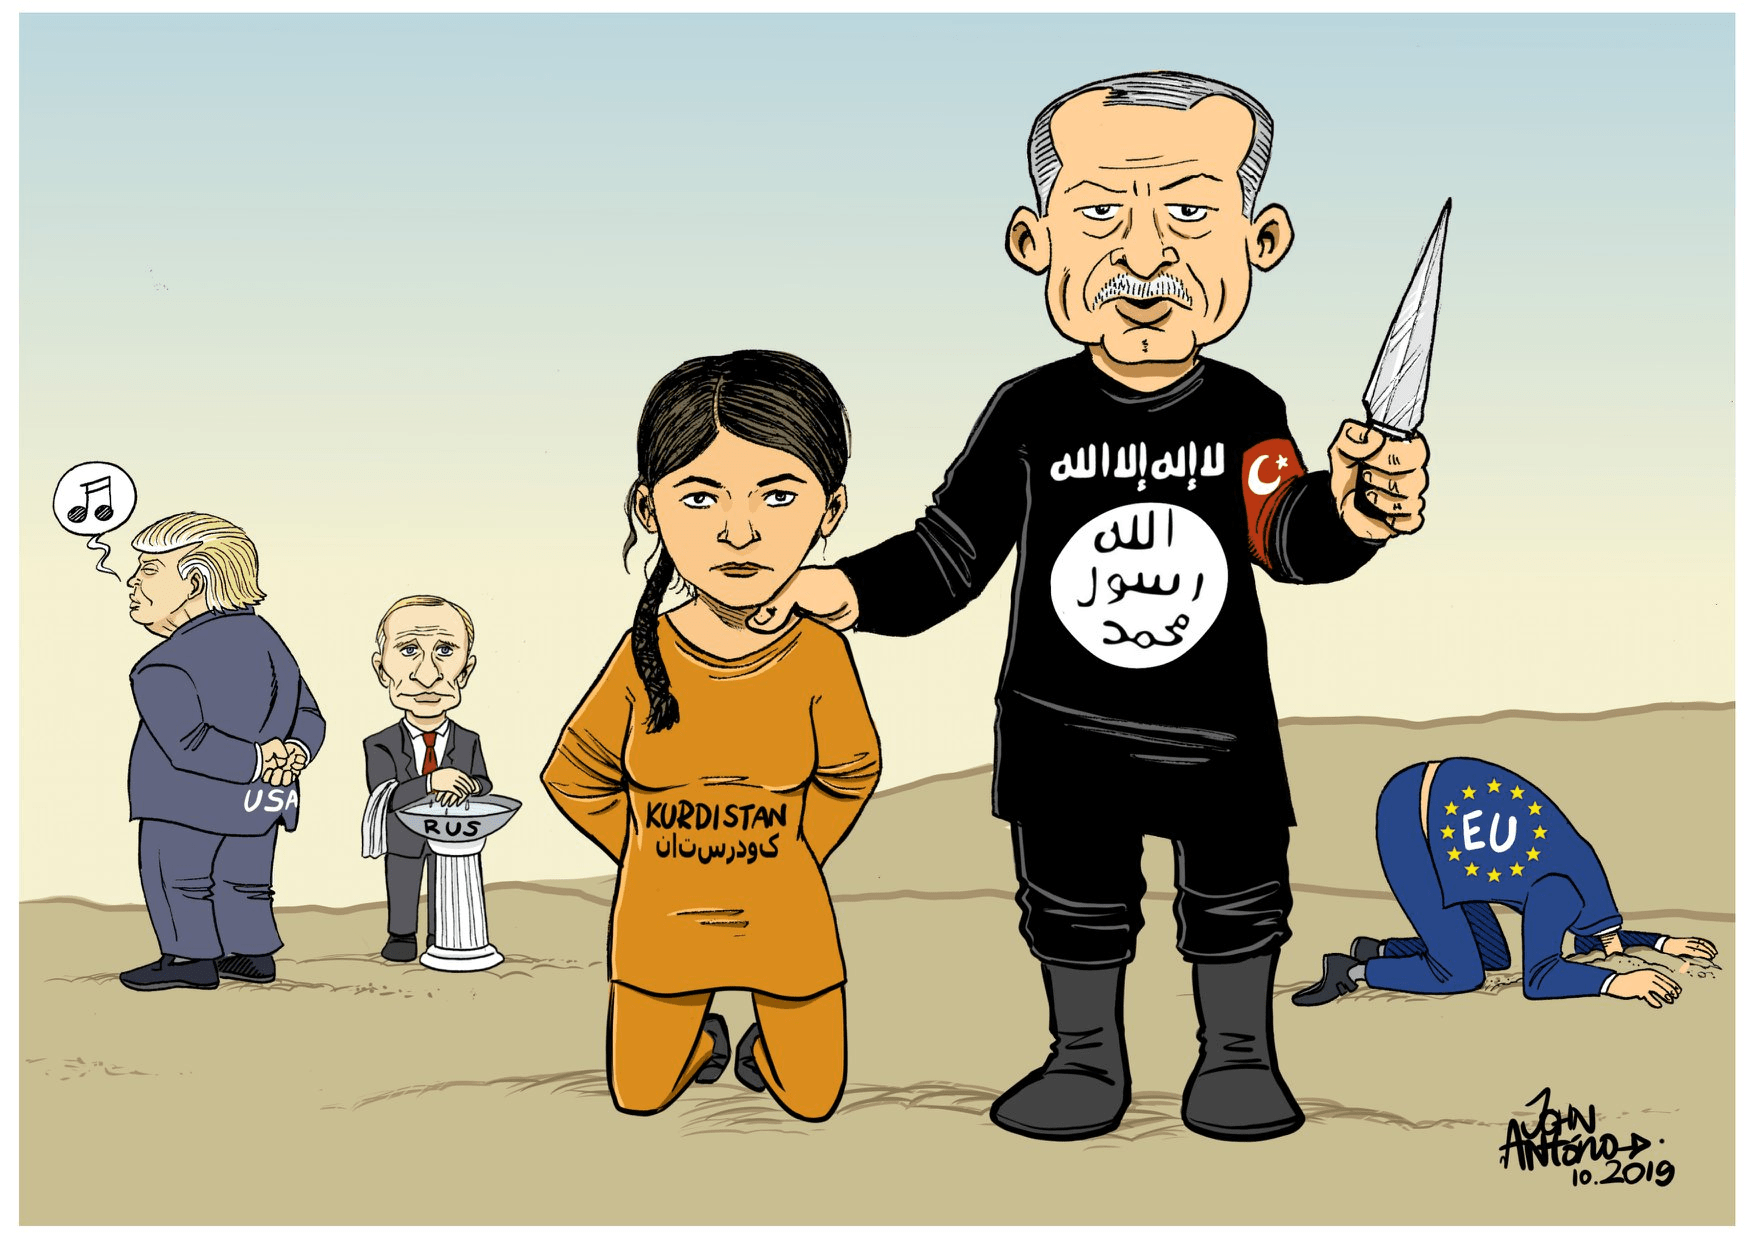 Ντροπή σου Ευρώπη αν υποκύψεις – “Ανατολίτικο παζάρι” Ερντογάν σε ΕΕ: Στηρίξτε με στο συριακό αν θέλετε λύση στο προσφυγικό